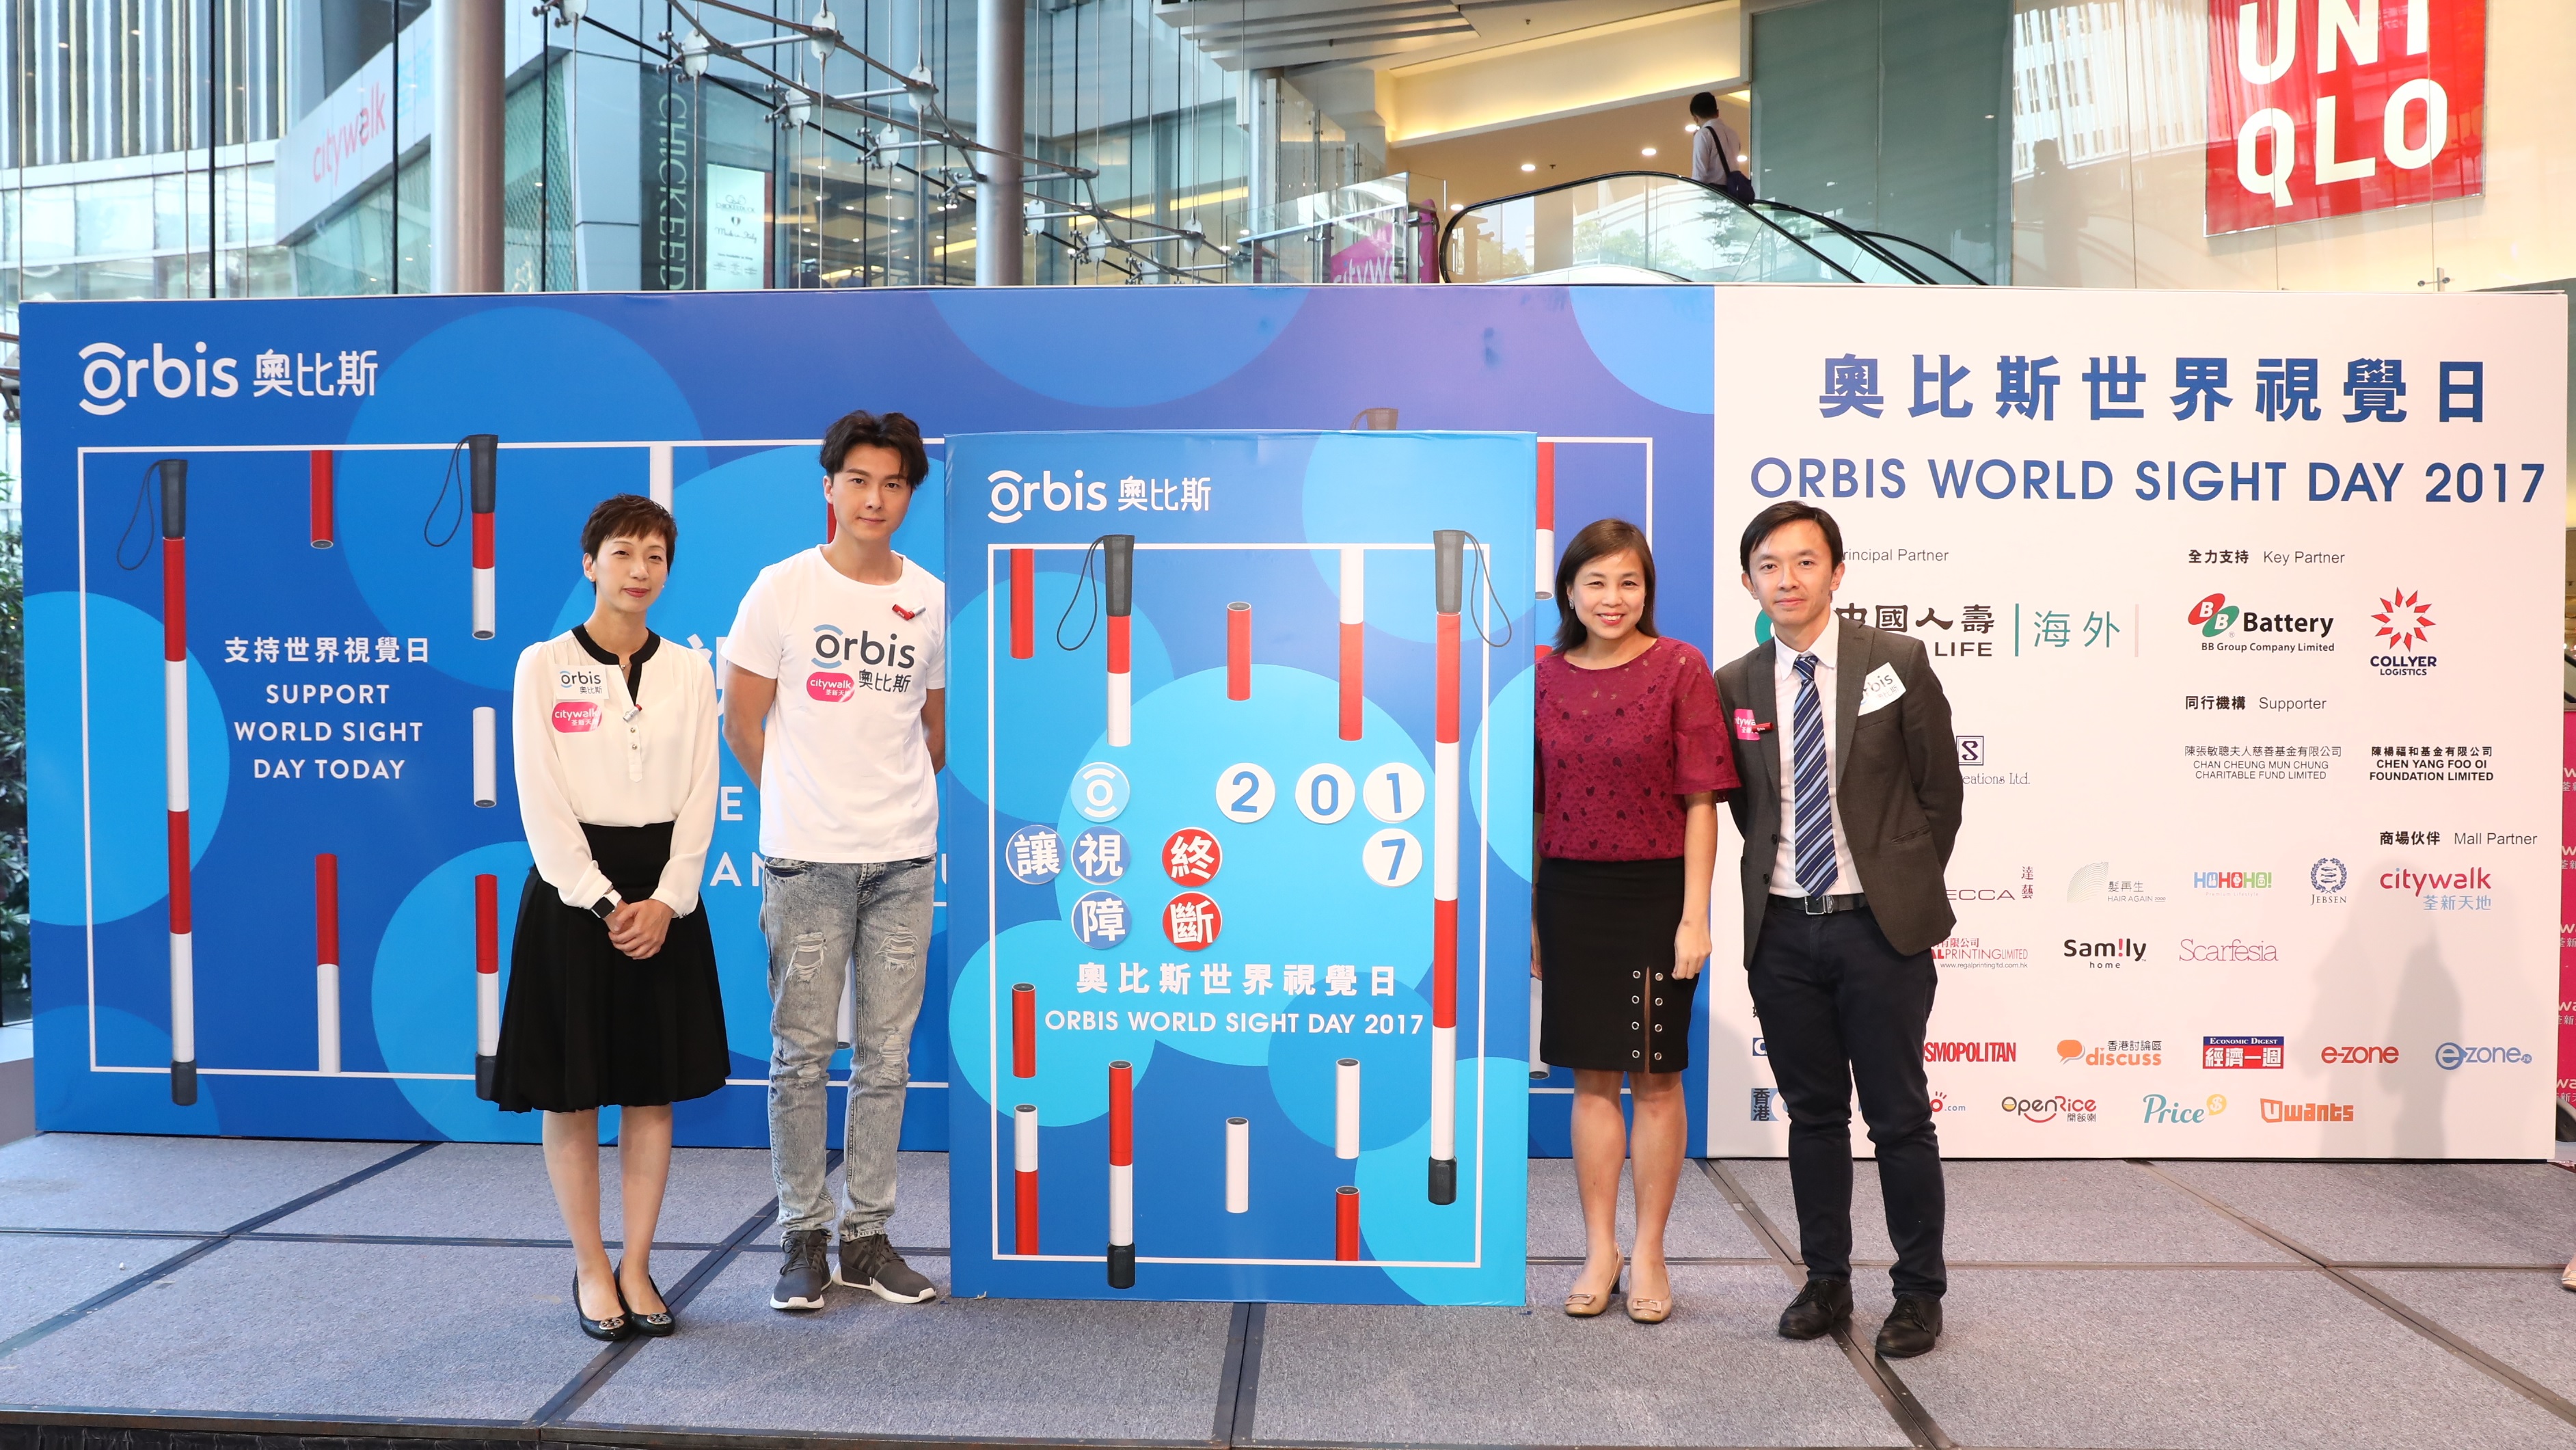 中国人寿（海外）成为「奥比斯世界视觉日」首席伙伴，荣获「最高筹款金额机构 - 冠军」奖项，为眼疾患者带来光明转机